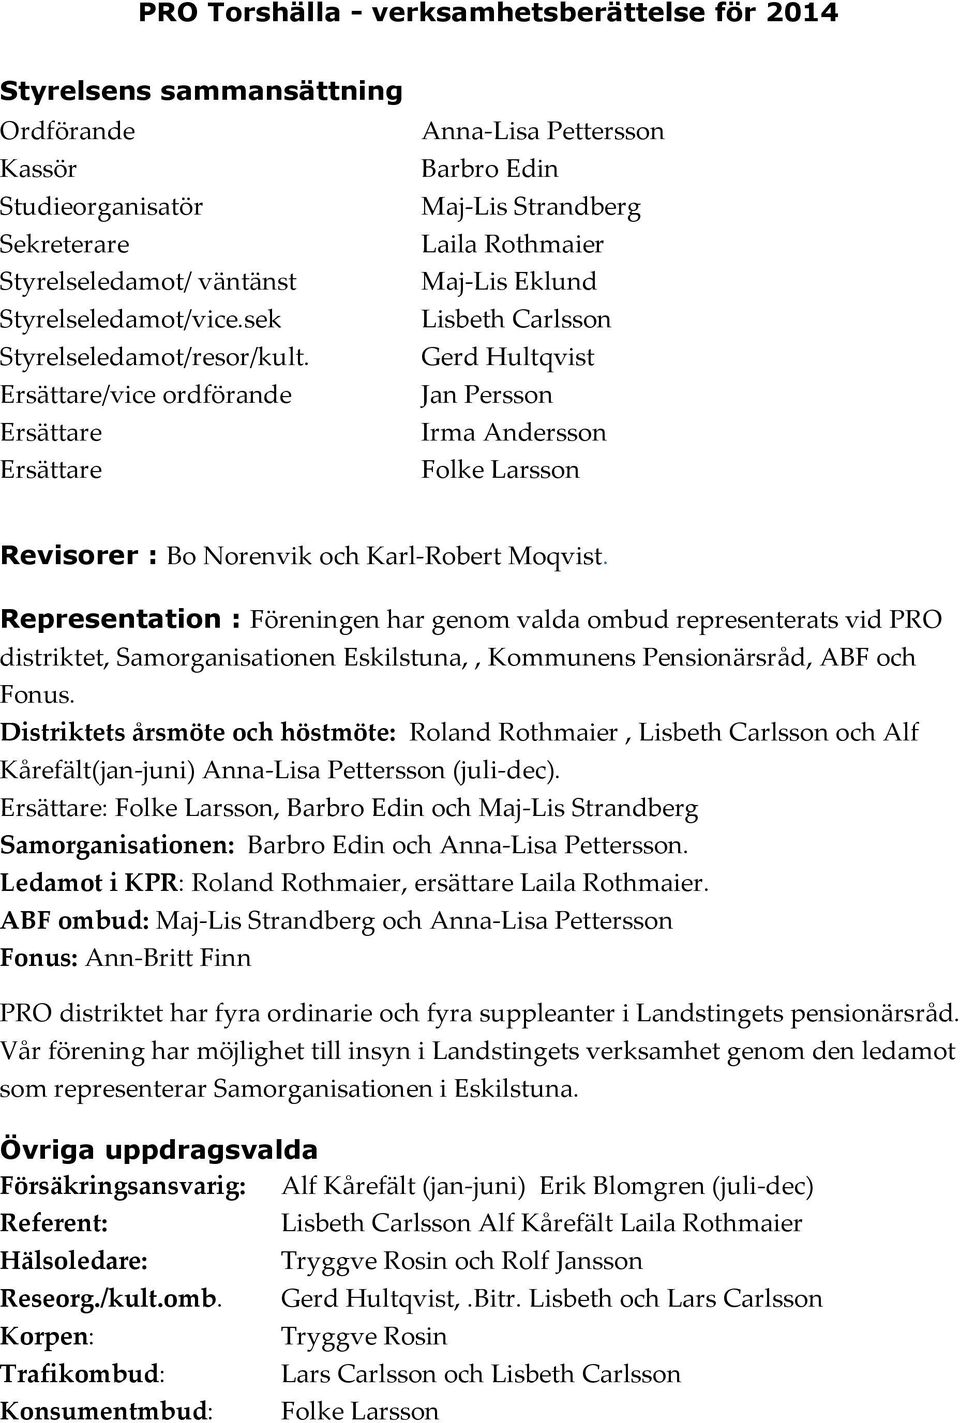 Karl-Robert Moqvist. Representation : Föreningen har genom valda ombud representerats vid PRO distriktet, Samorganisationen Eskilstuna,, Kommunens Pensionärsråd, ABF och Fonus.